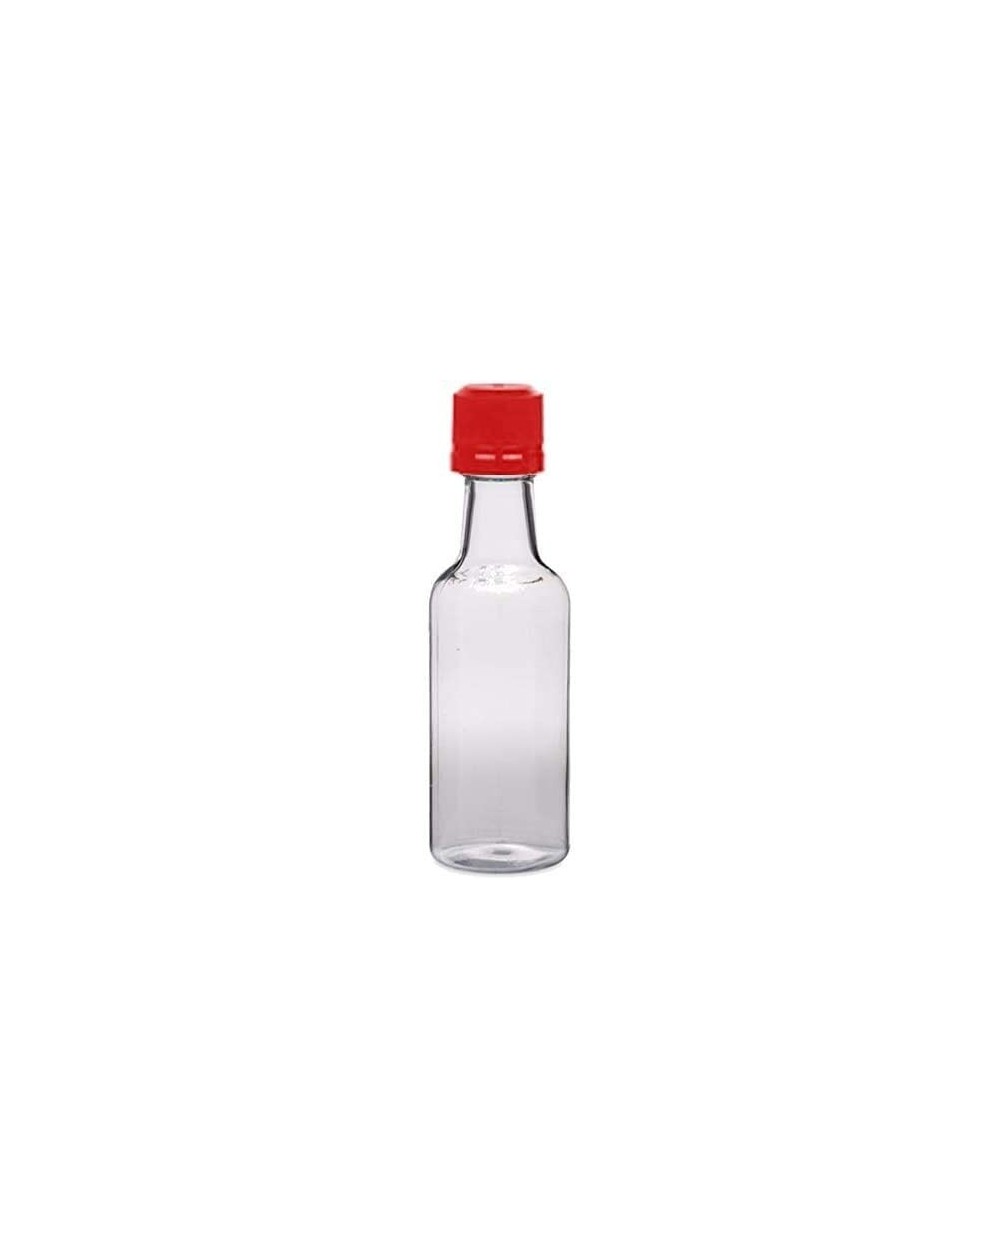 Favors Red Mini Liquor Alcohol Bottles - Red - C61987K0X9Z $14.47